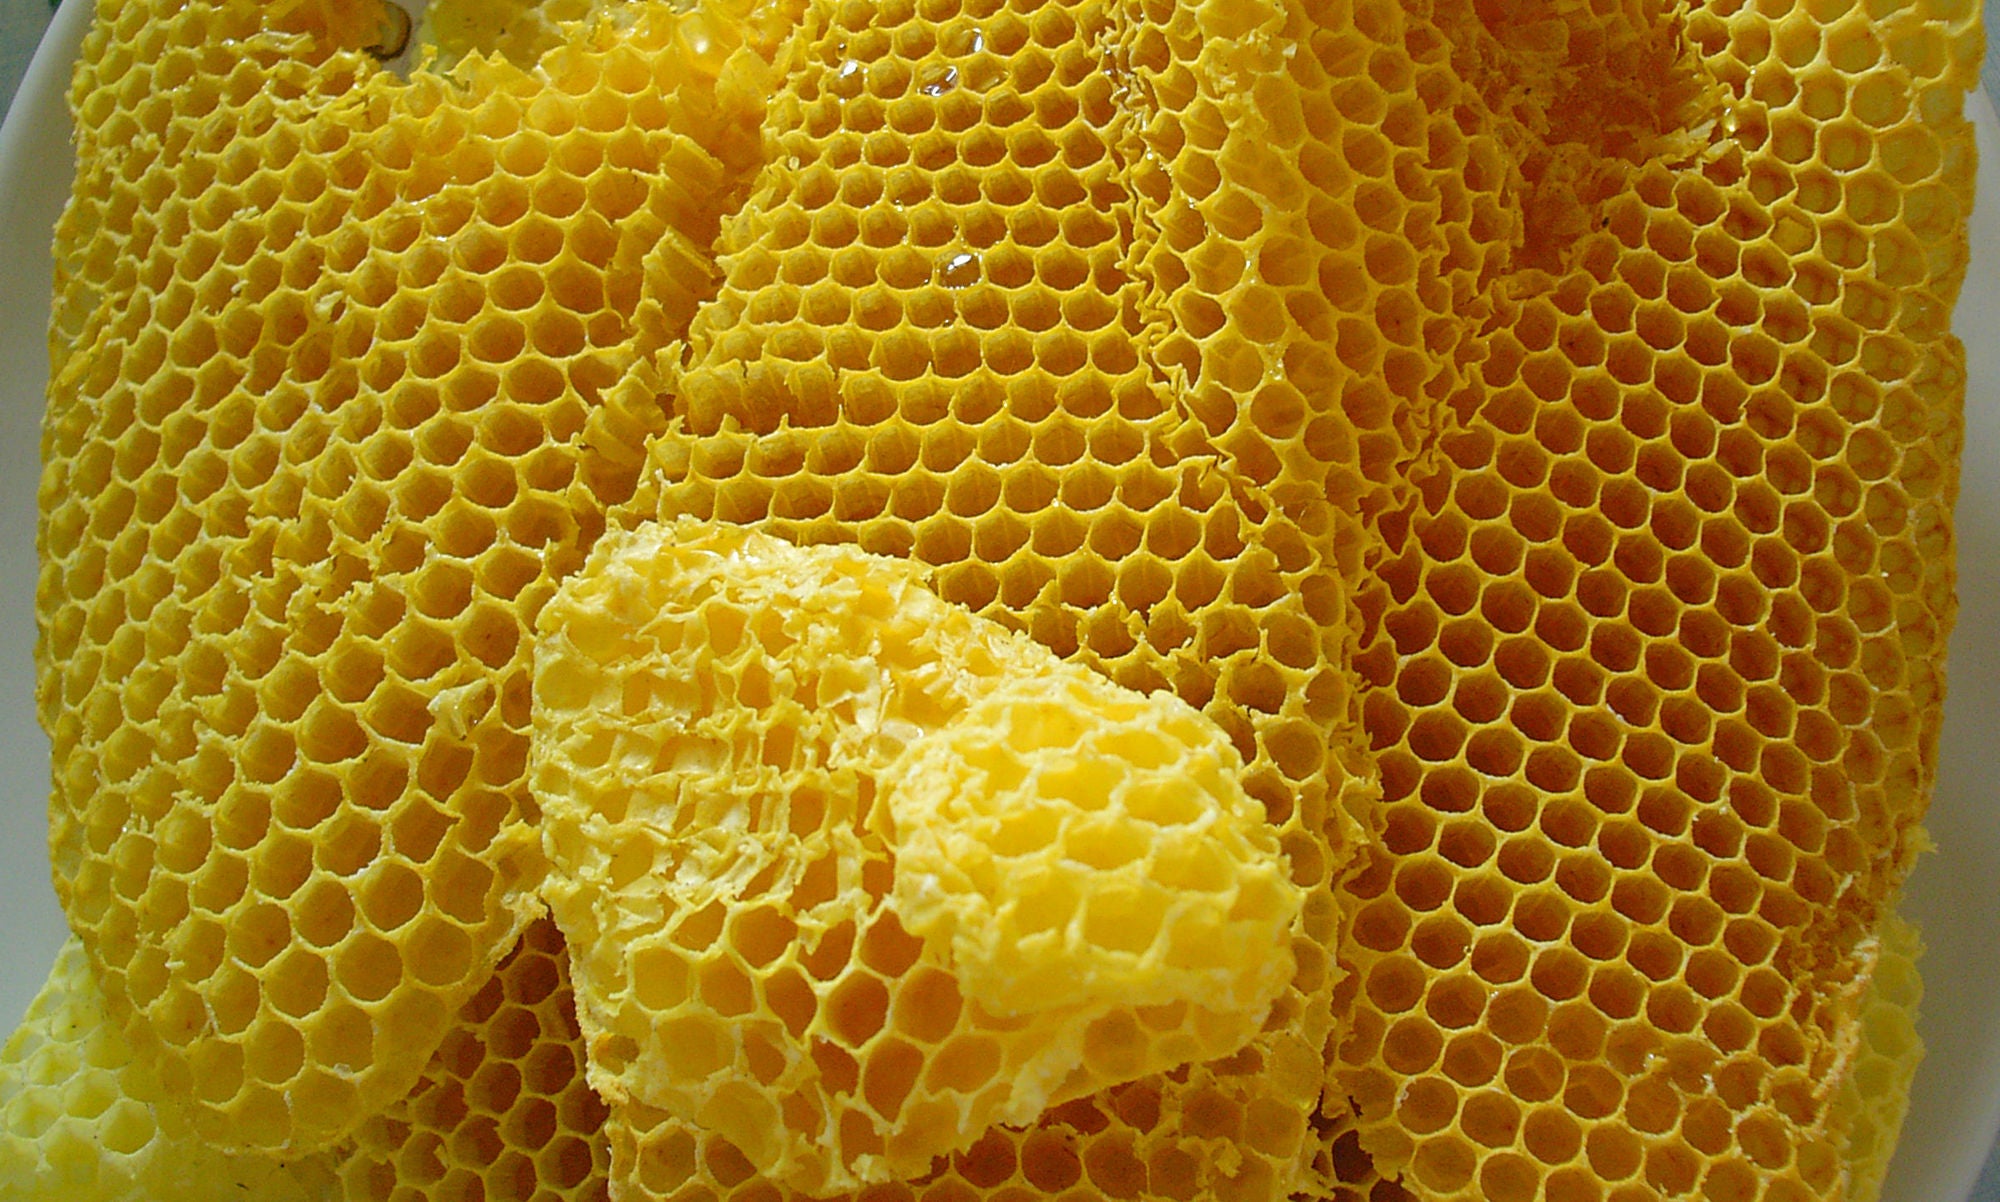 Minding your beeswax - Ecrotek Beekeeping Supplies Australia